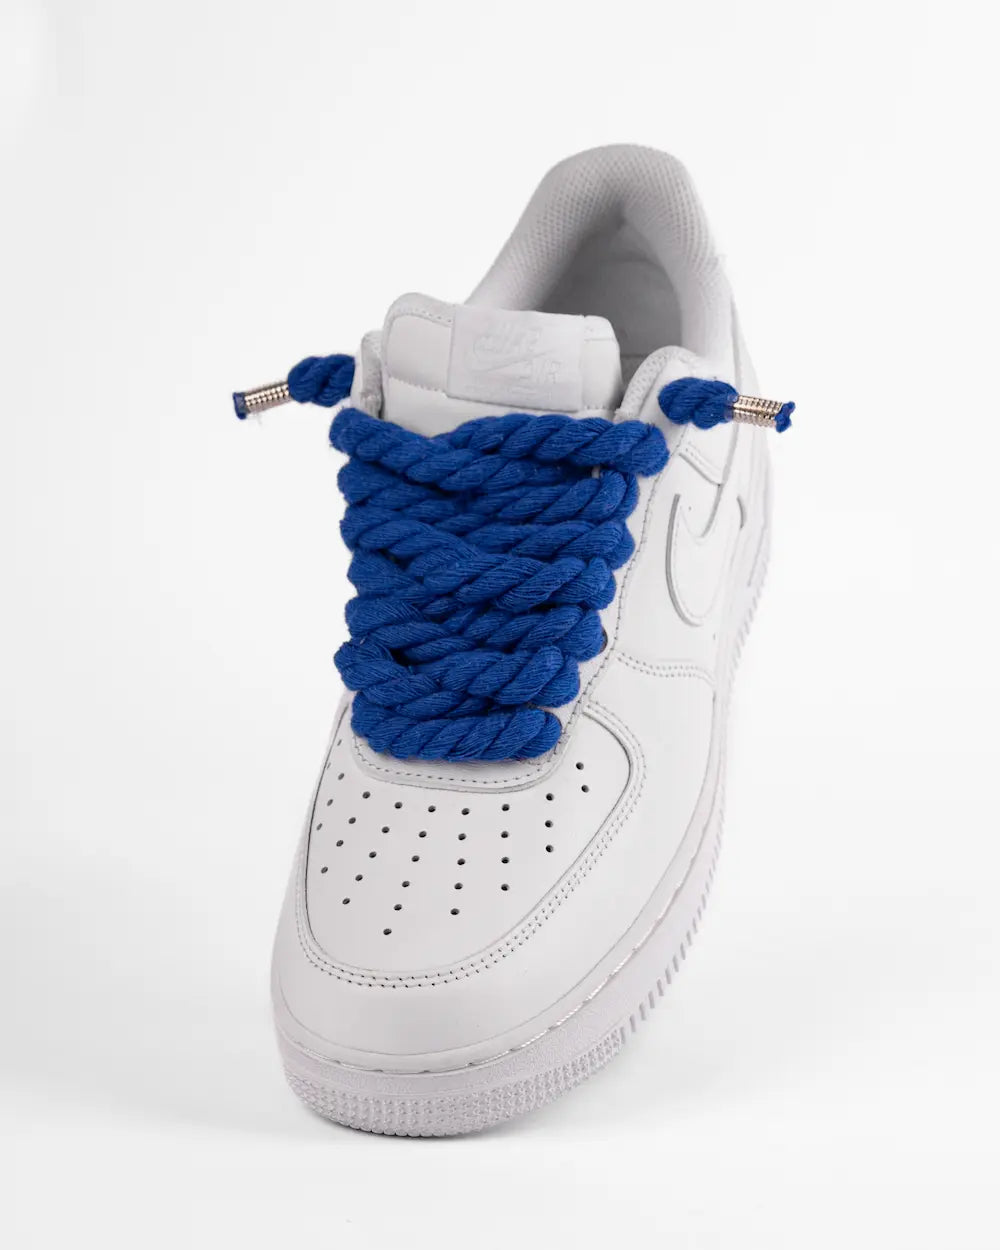 Nike Air Force 1 bianca personalizzata by SEDDYS con lacci in corda blu